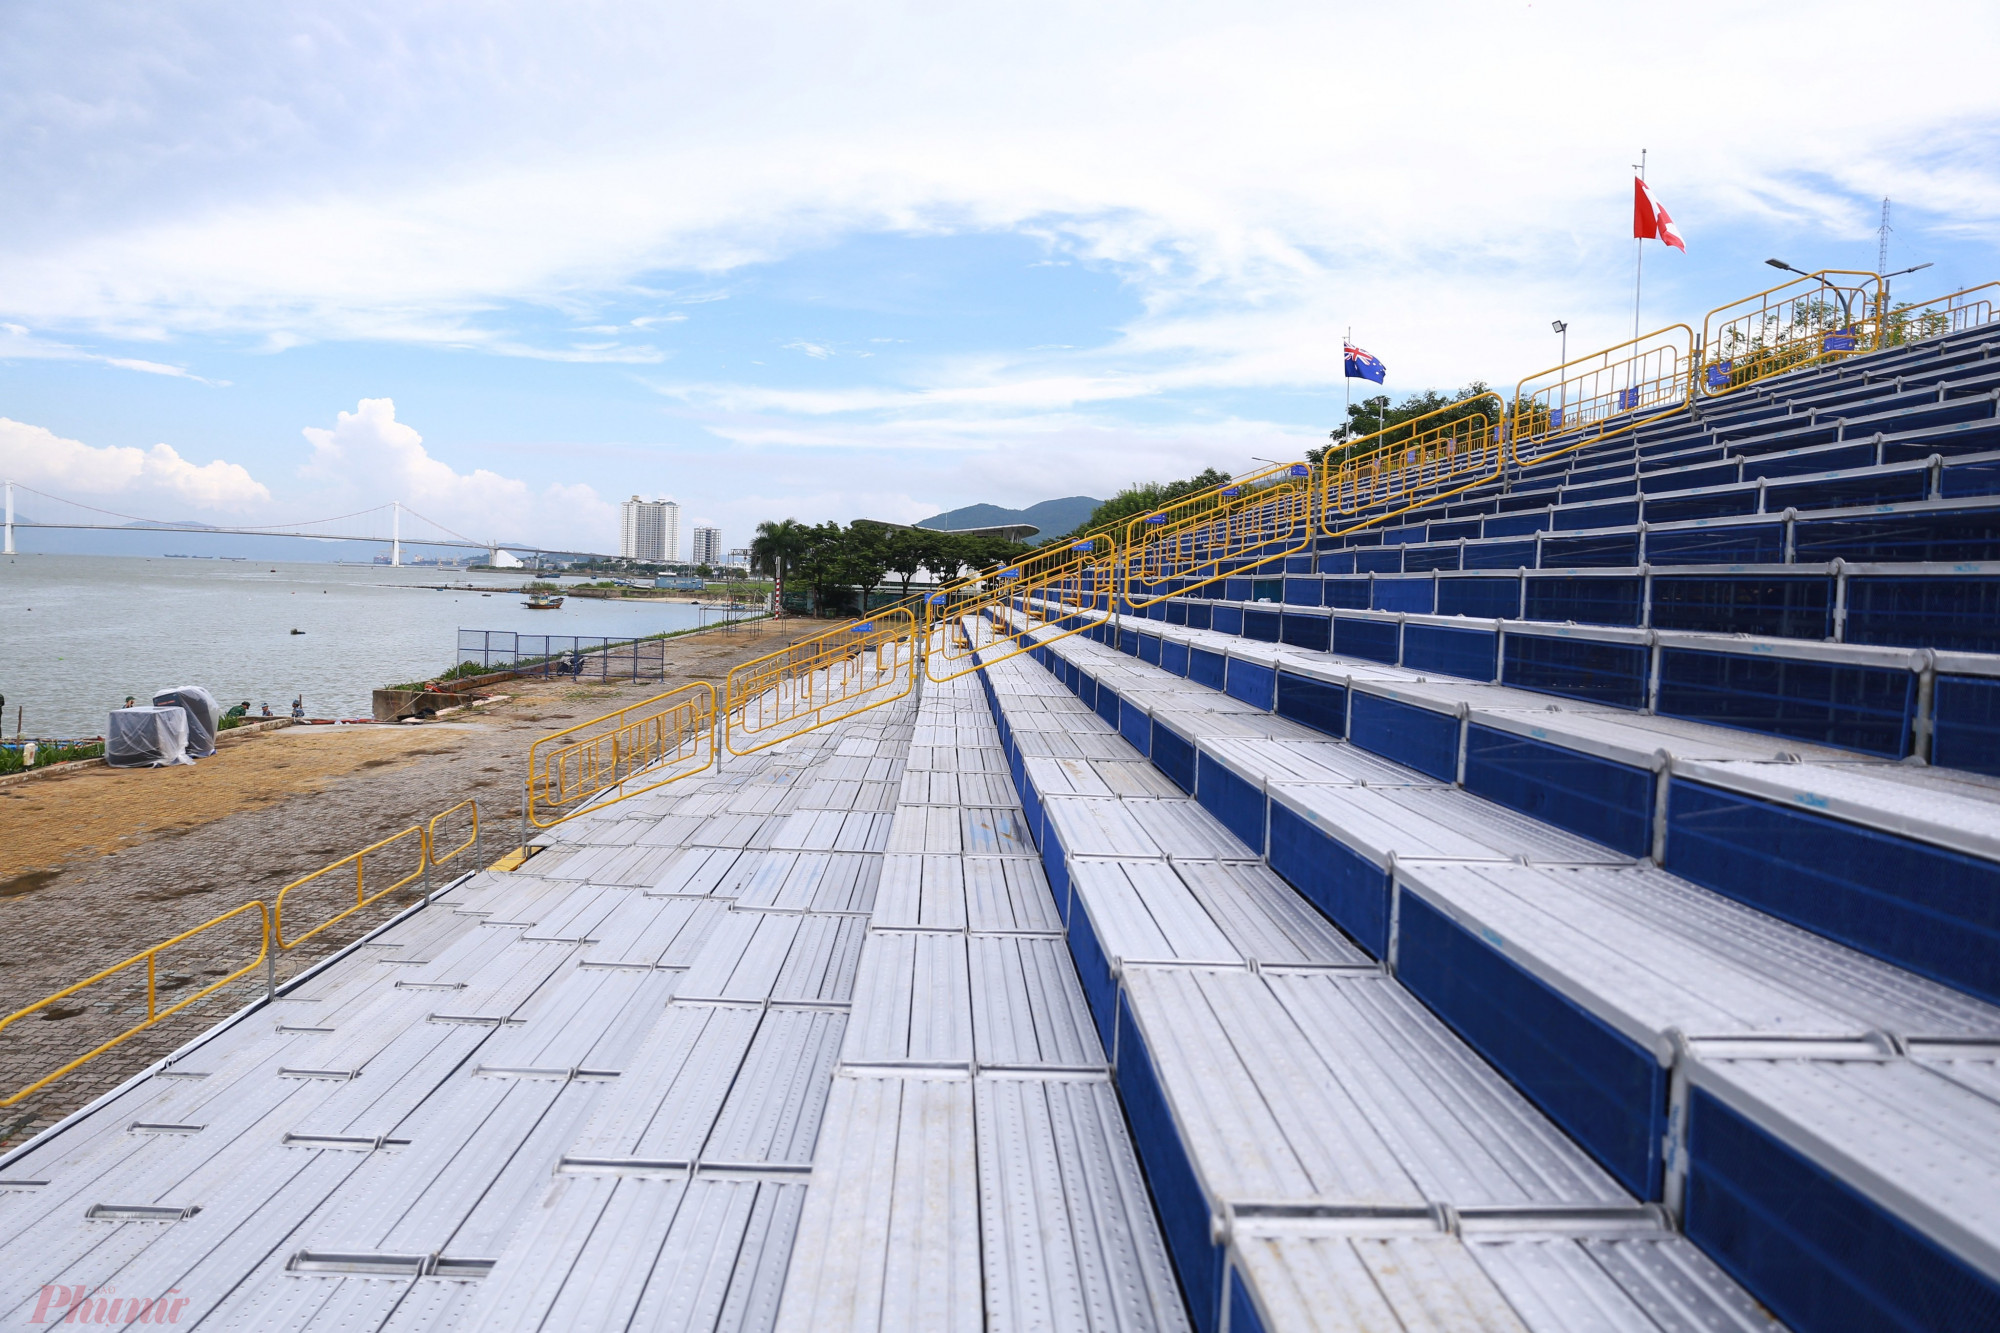 Khu vực khán đài và sân khấu nằm đối diện với bãi bắn phía bên kia sông Hàn cũng đang gần hoàn thiện